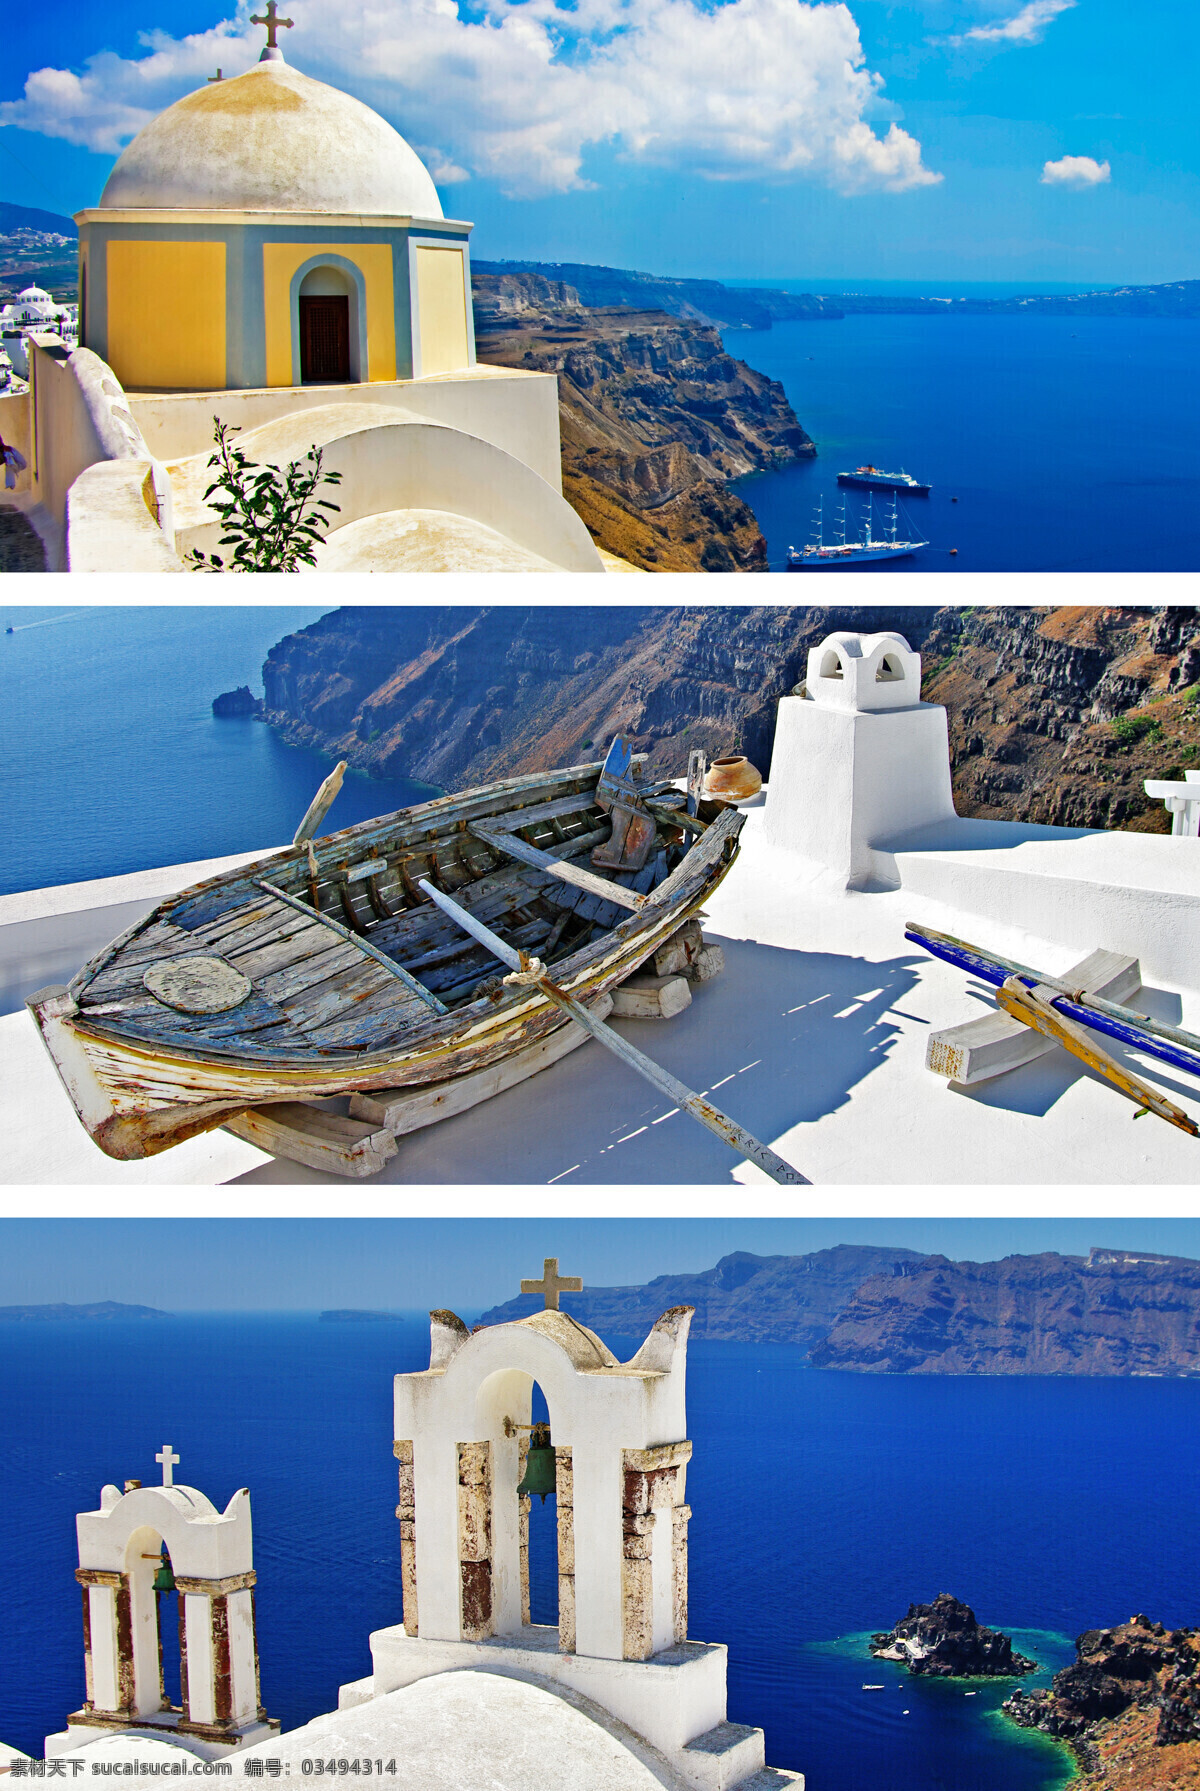 爱琴海 风景图片 希腊风景 海岸风景 海岸城市风景 旅游景点 美丽风景 美景 景色 城市风光 环境家居 蓝色